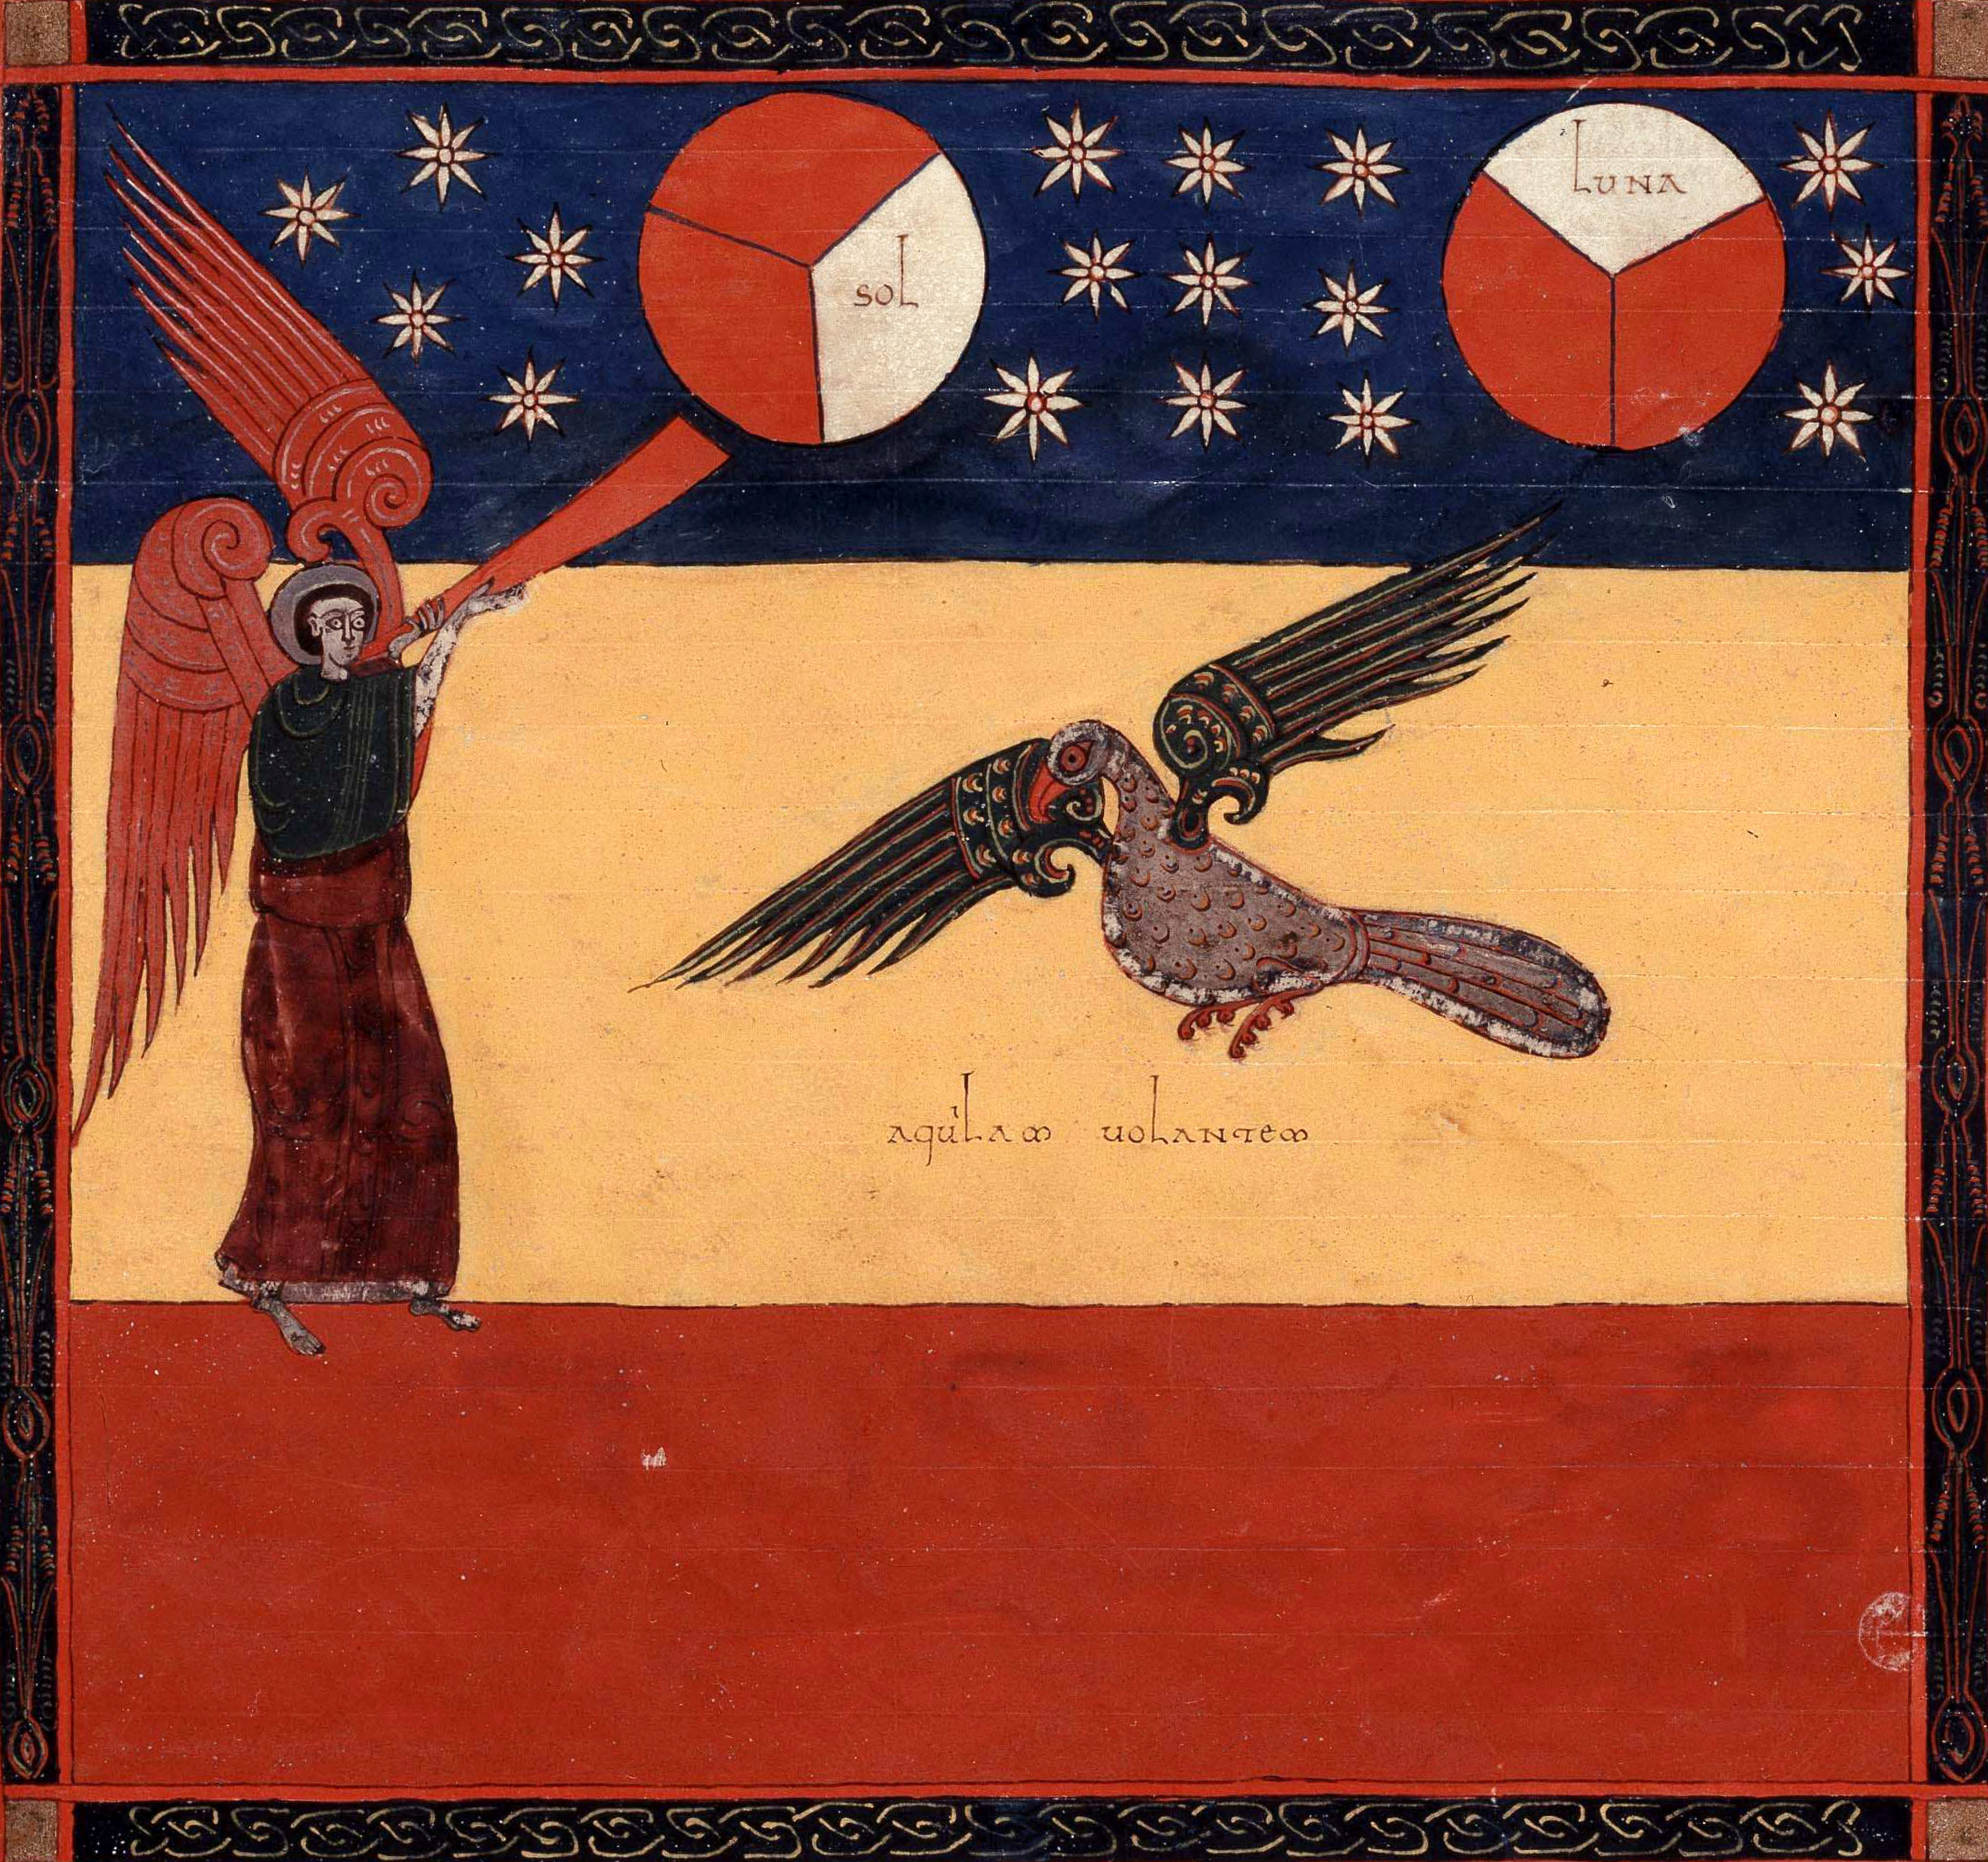 Beatus de Facundus, p. 336 – La quatrième trompette, le soleil, la lune et les étoiles sont frappés d’un tiers d’obscurité ; un aigle, volant au zénith, annonce les malheurs futurs (Ap 8, 12-13).